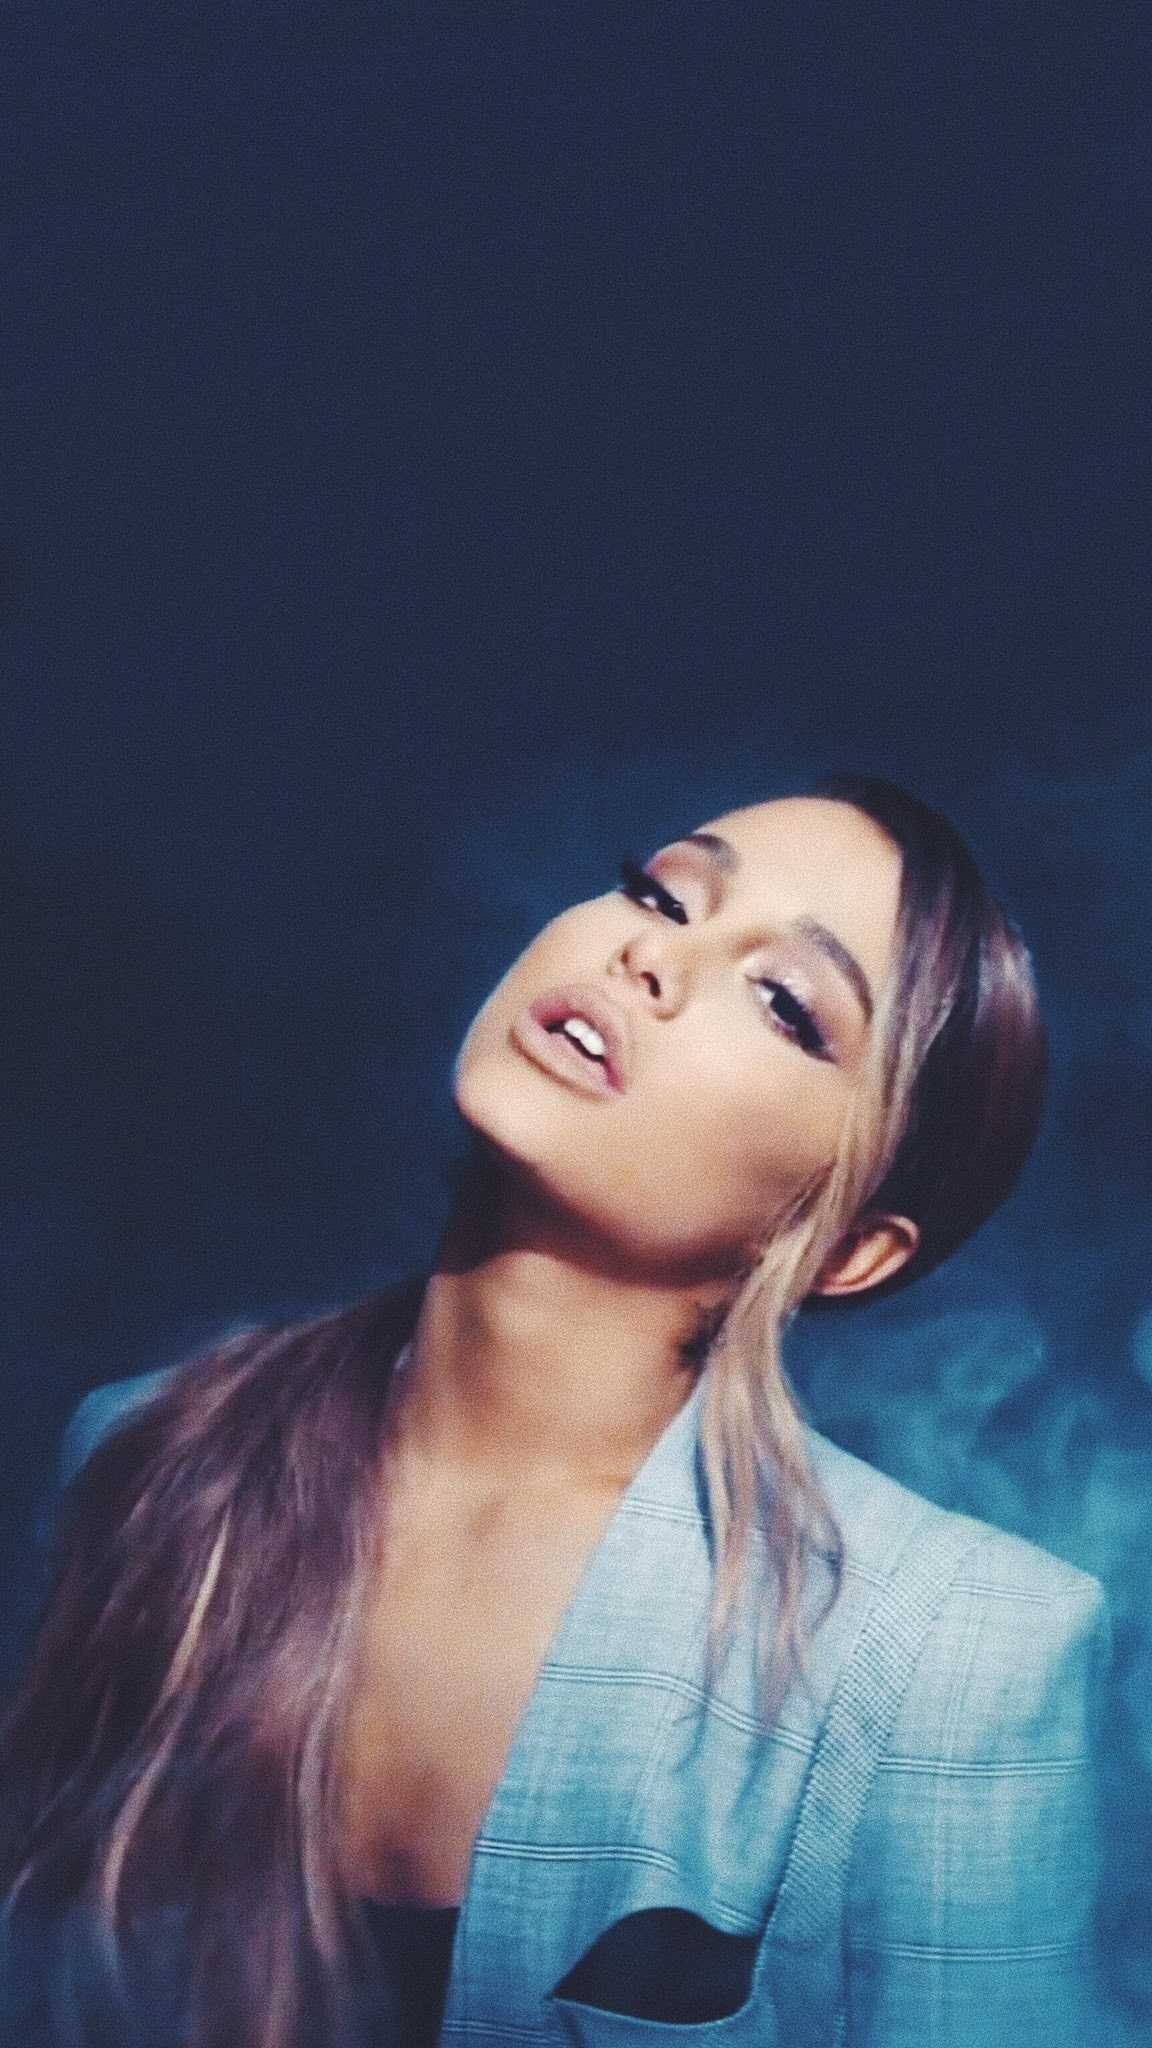 Ariana Grande Wallpaper - NawPic